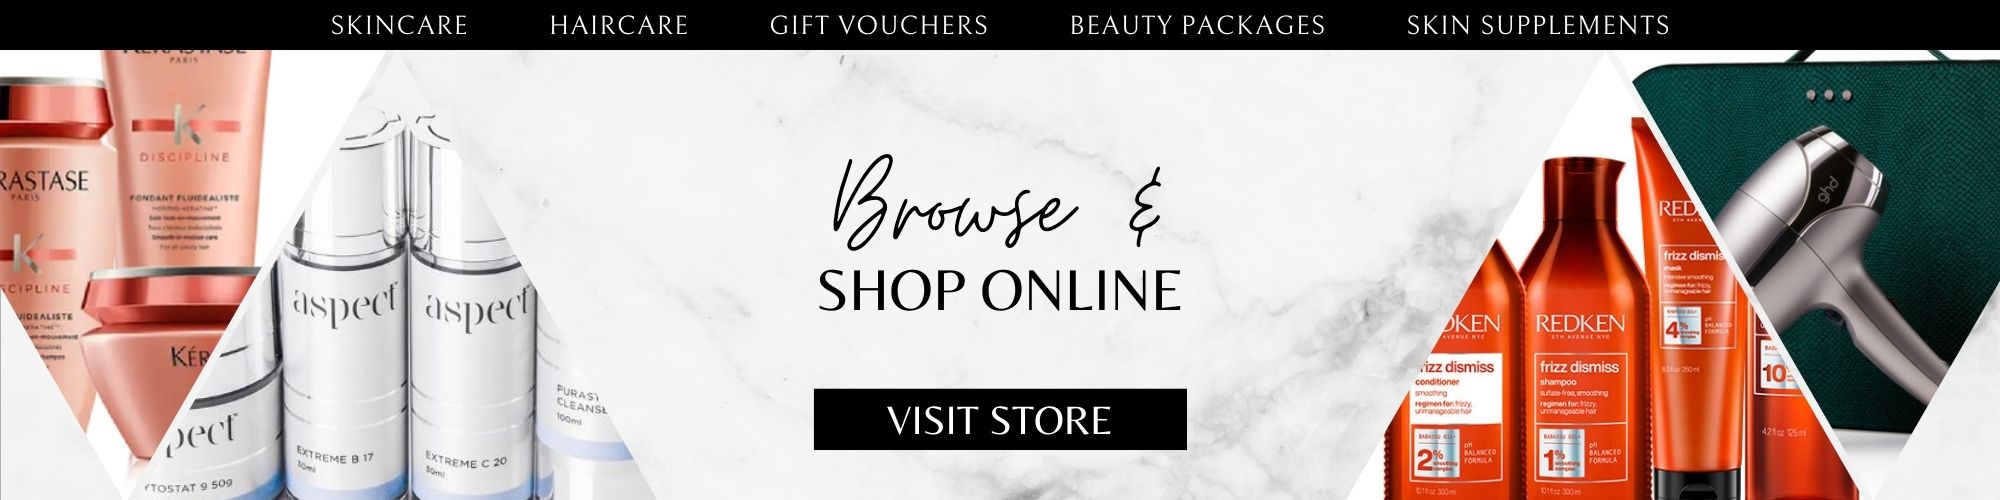 Salon One Shop Online